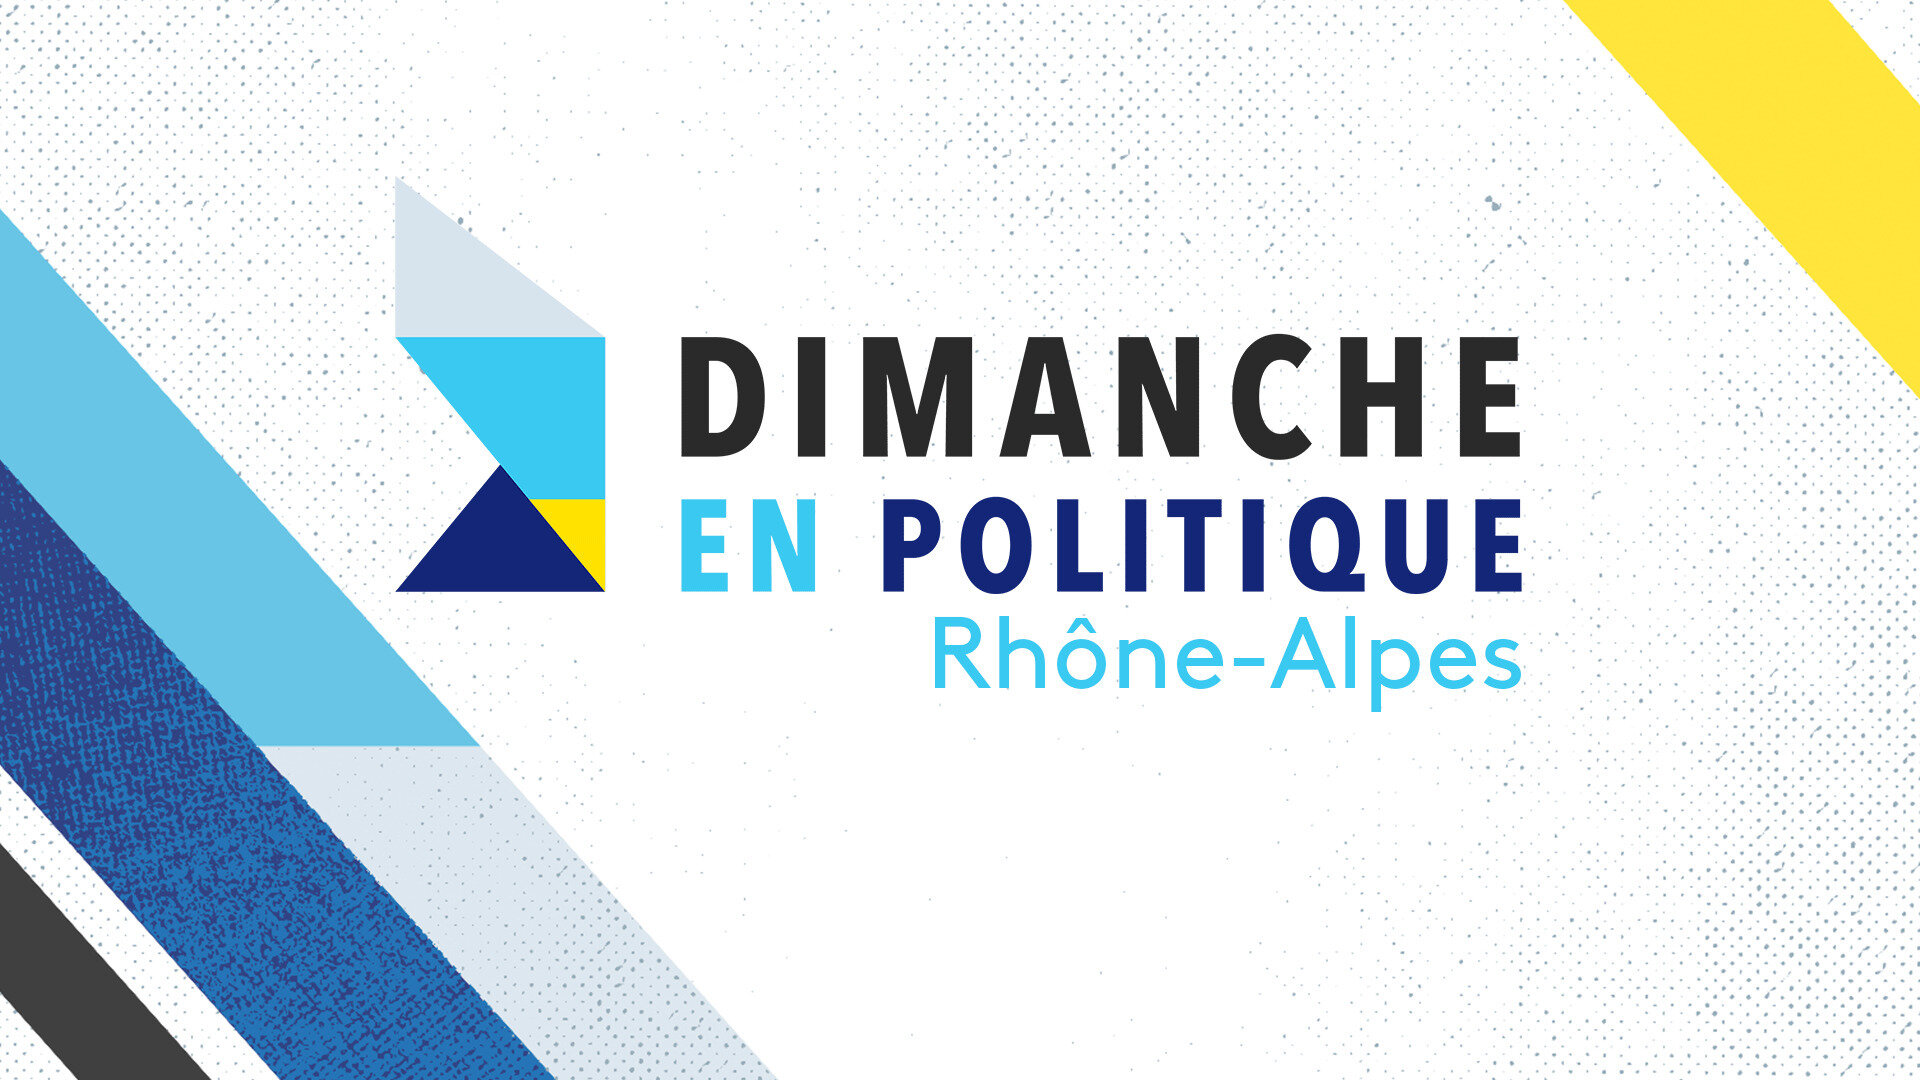 Dimanche en politique - Rhône-Alpes